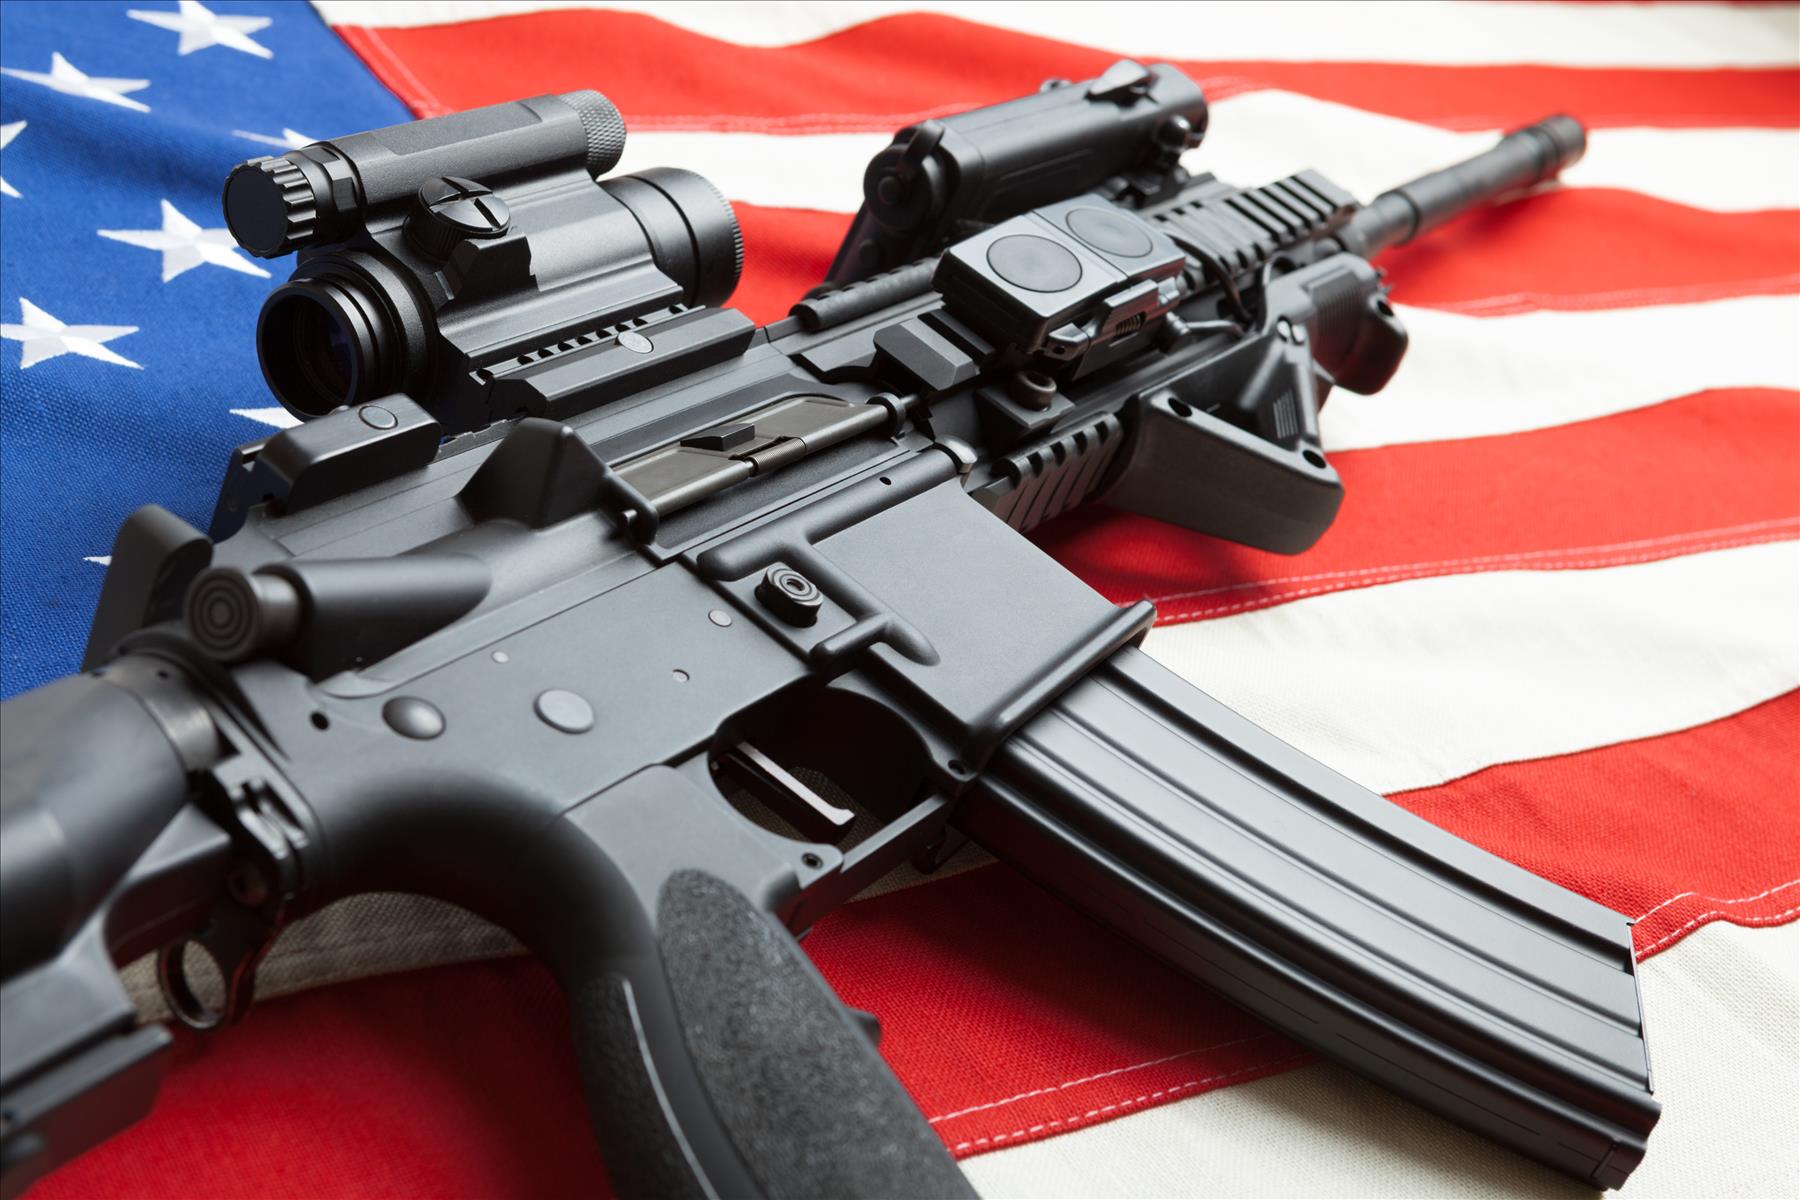 US Gun Violence on its way to Uganda?